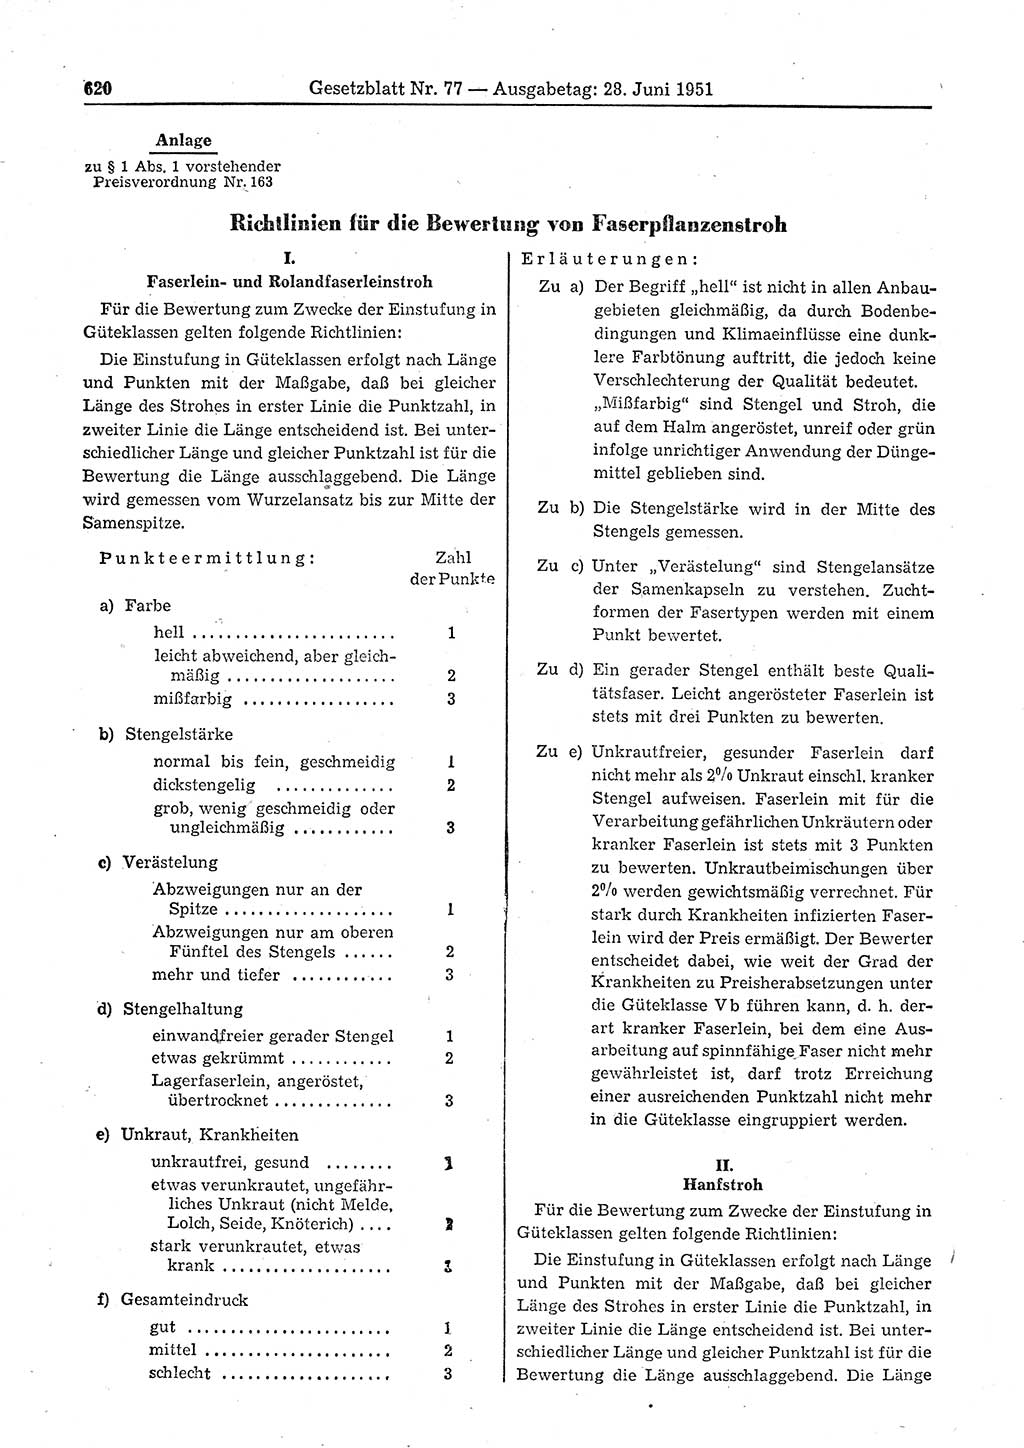 Gesetzblatt (GBl.) der Deutschen Demokratischen Republik (DDR) 1951, Seite 620 (GBl. DDR 1951, S. 620)